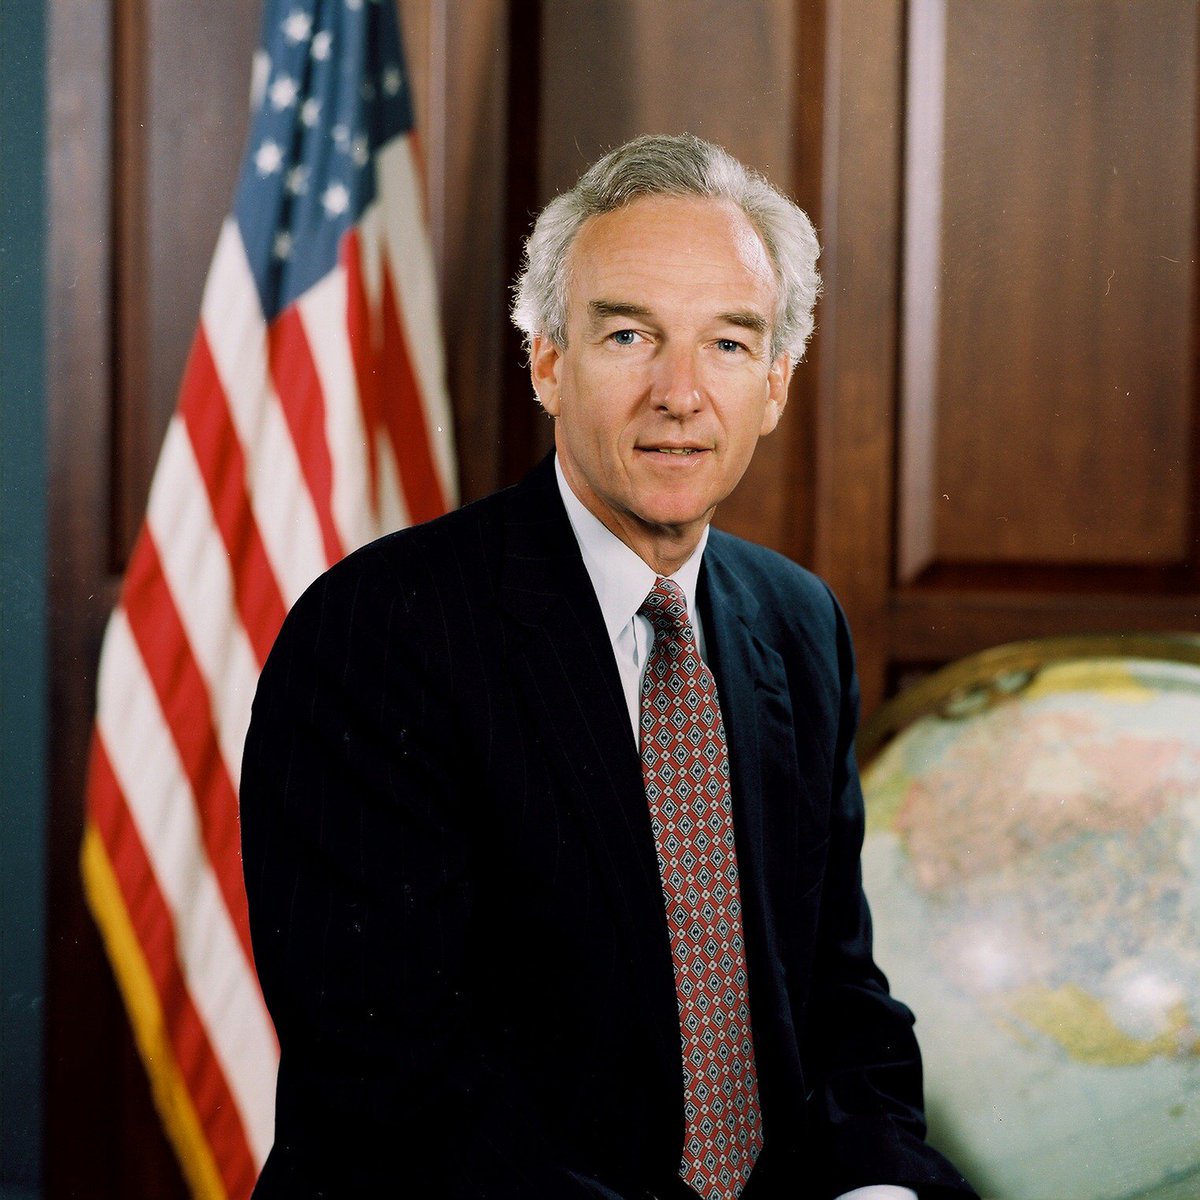 Senator Wyche Fowler (D-GA)